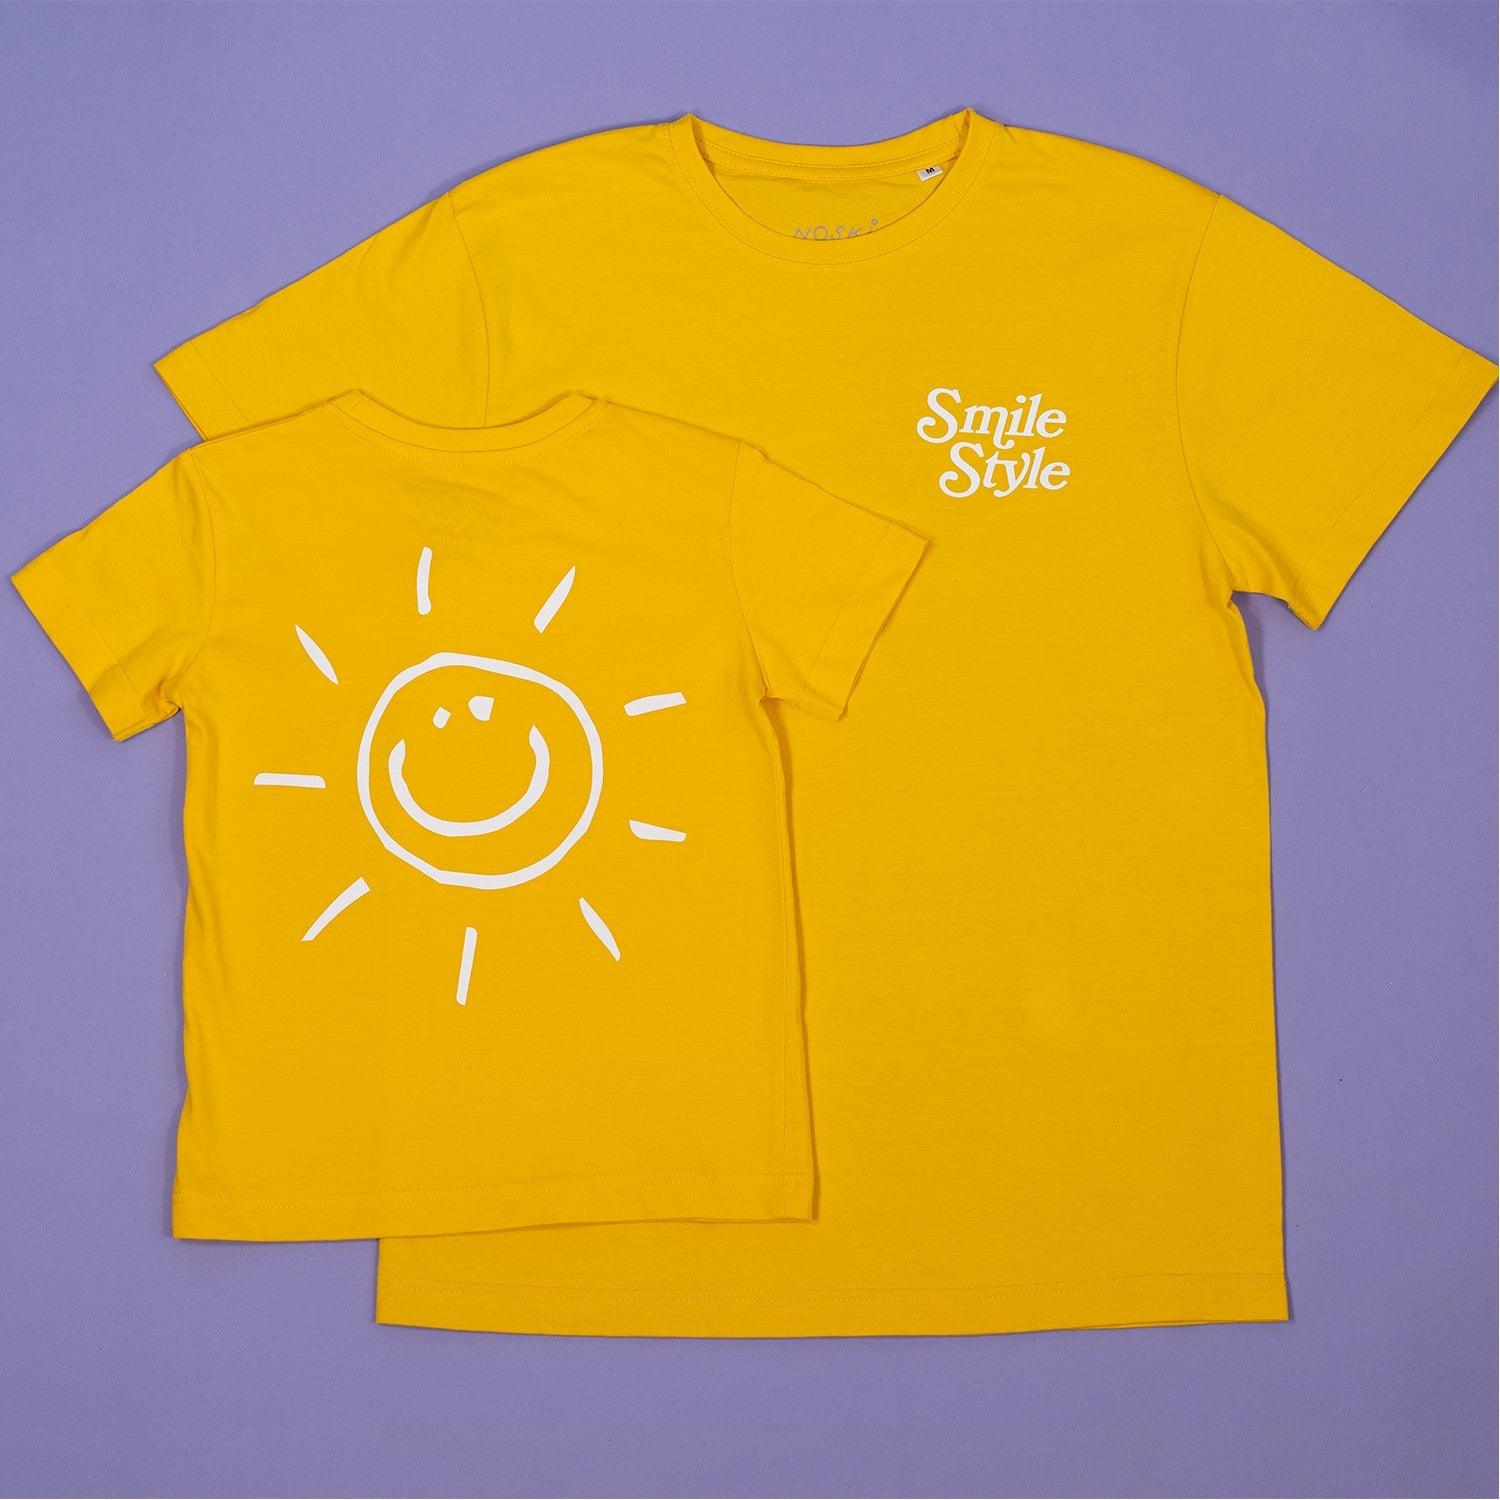 Noski Noski: koszulka dla dziecka Smile Style - Noski Noski